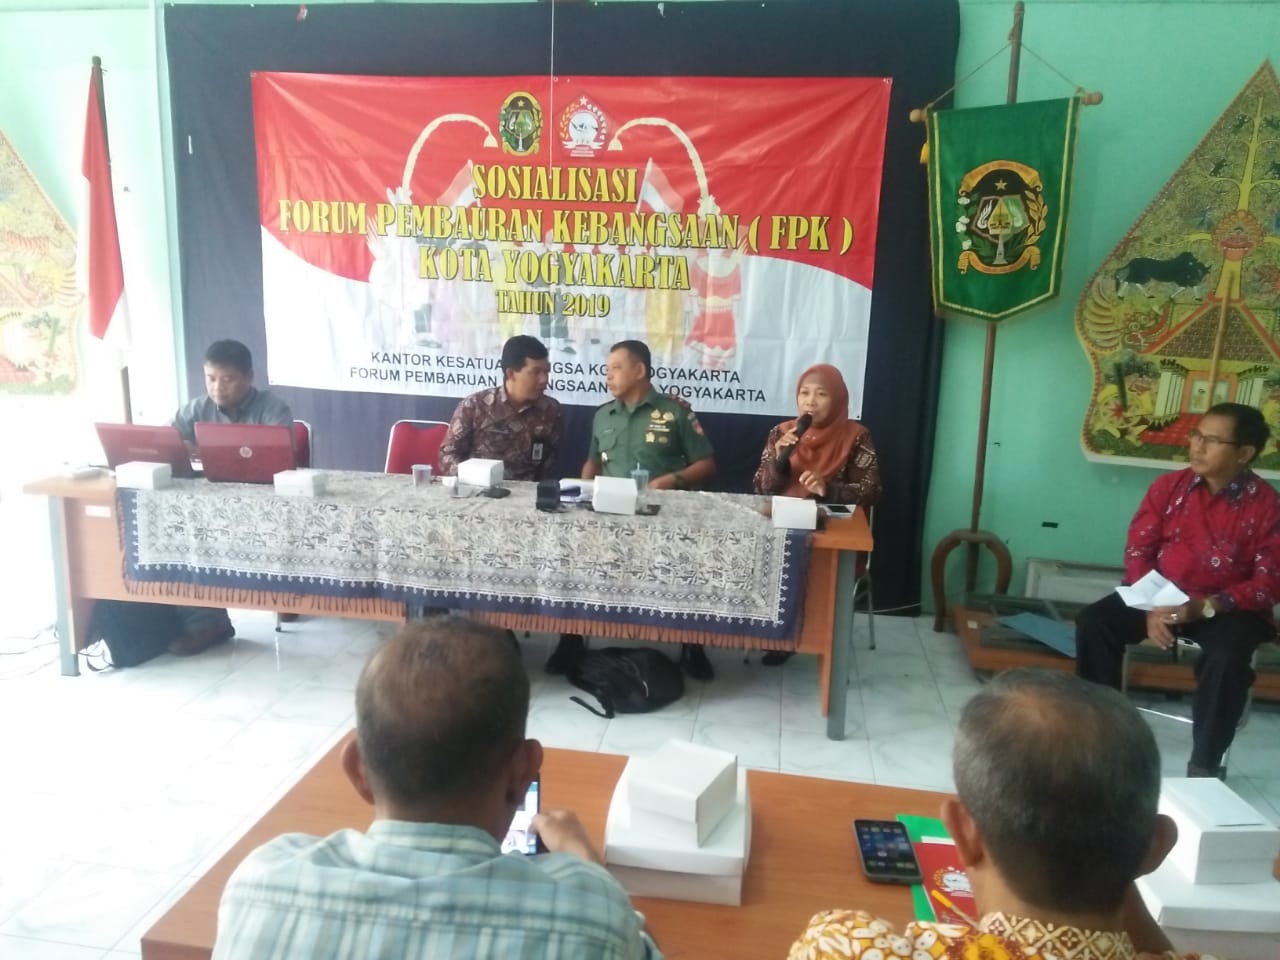 Sosialisasi Forum Pembauran Kebangsaan ( FPK ) di Pendopo Kecamatan Gondomanan Tahun  2019